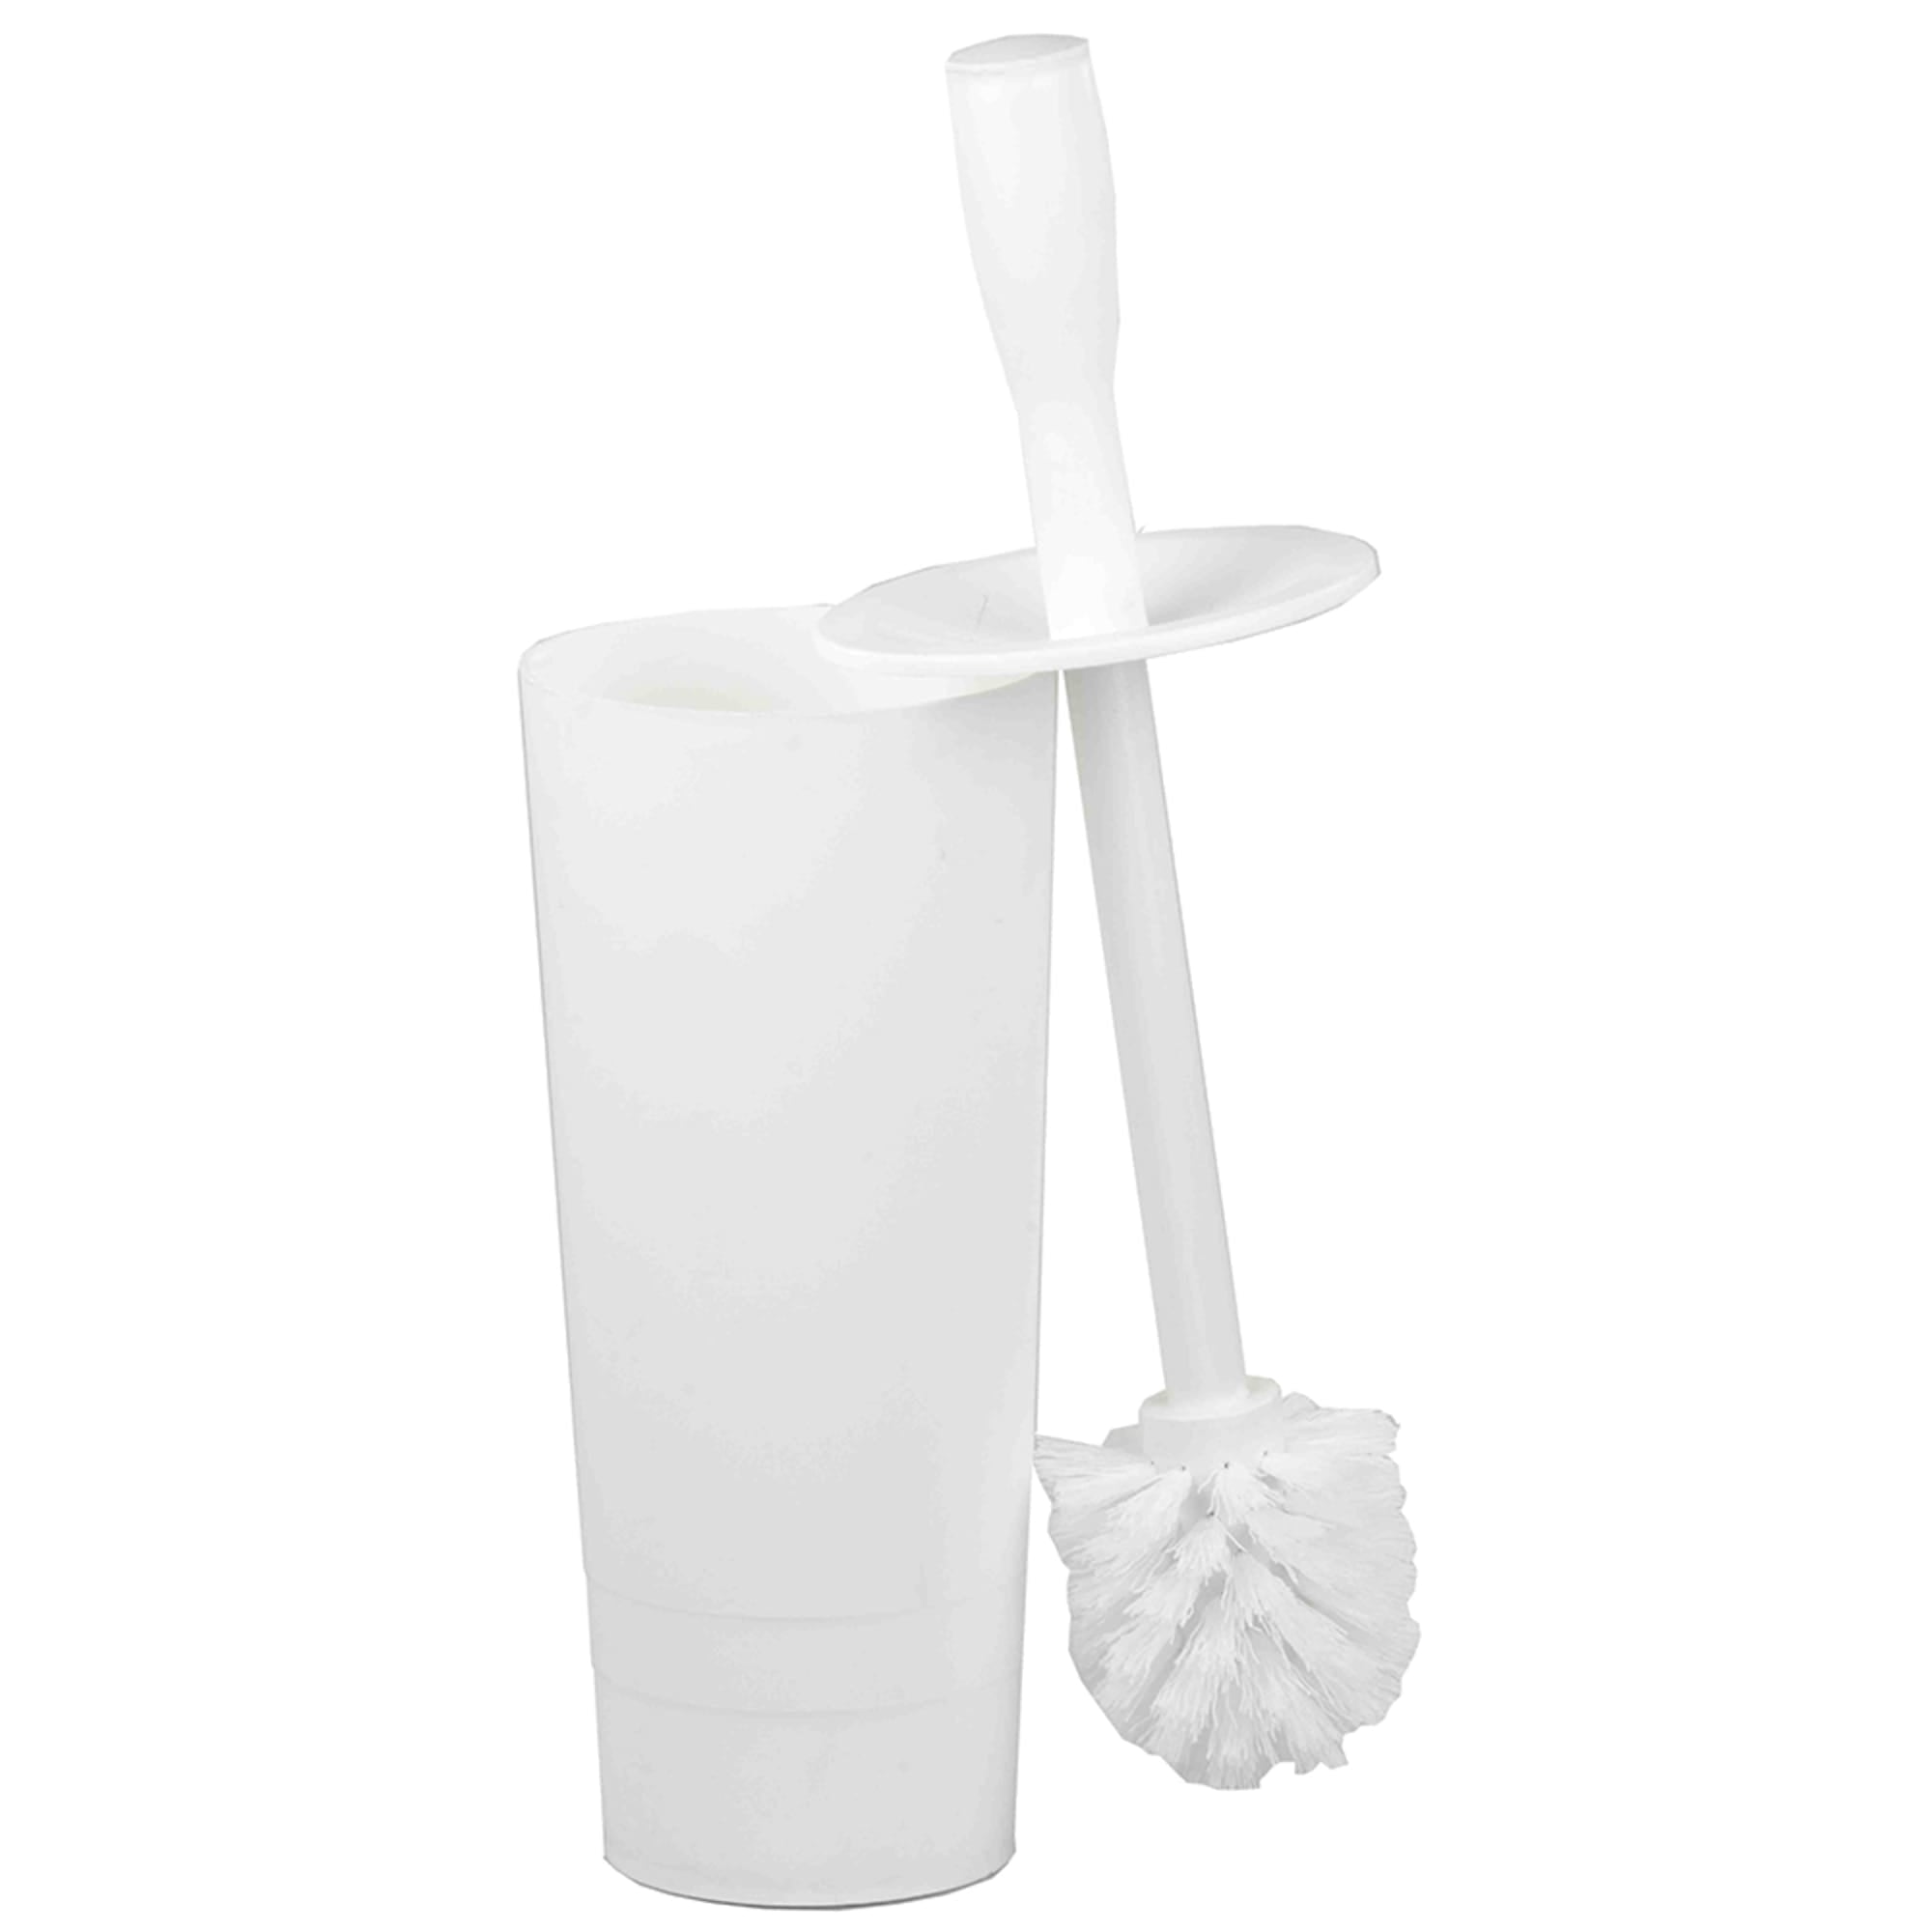 Home Basics Plastic Toilet Brush Holder, White $6.00 EACH, CASE PACK OF 12